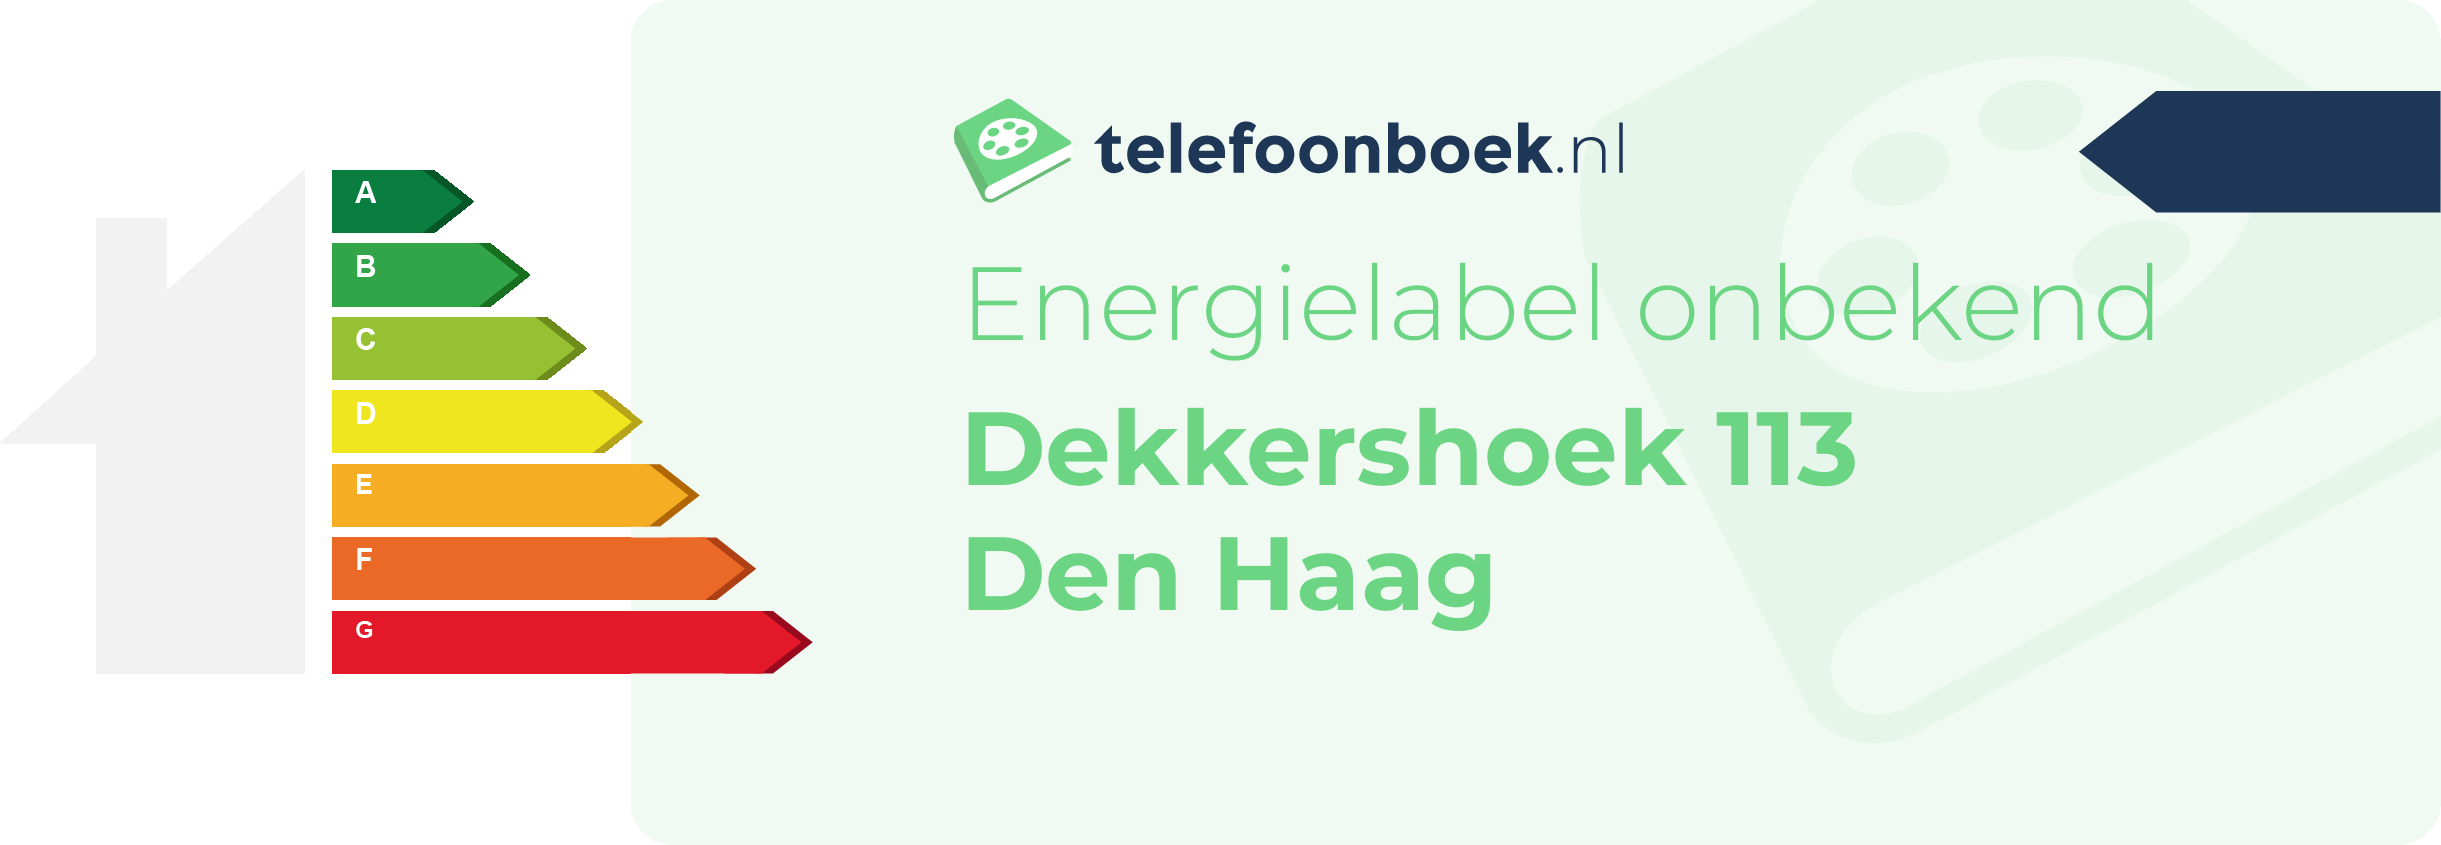 Energielabel Dekkershoek 113 Den Haag